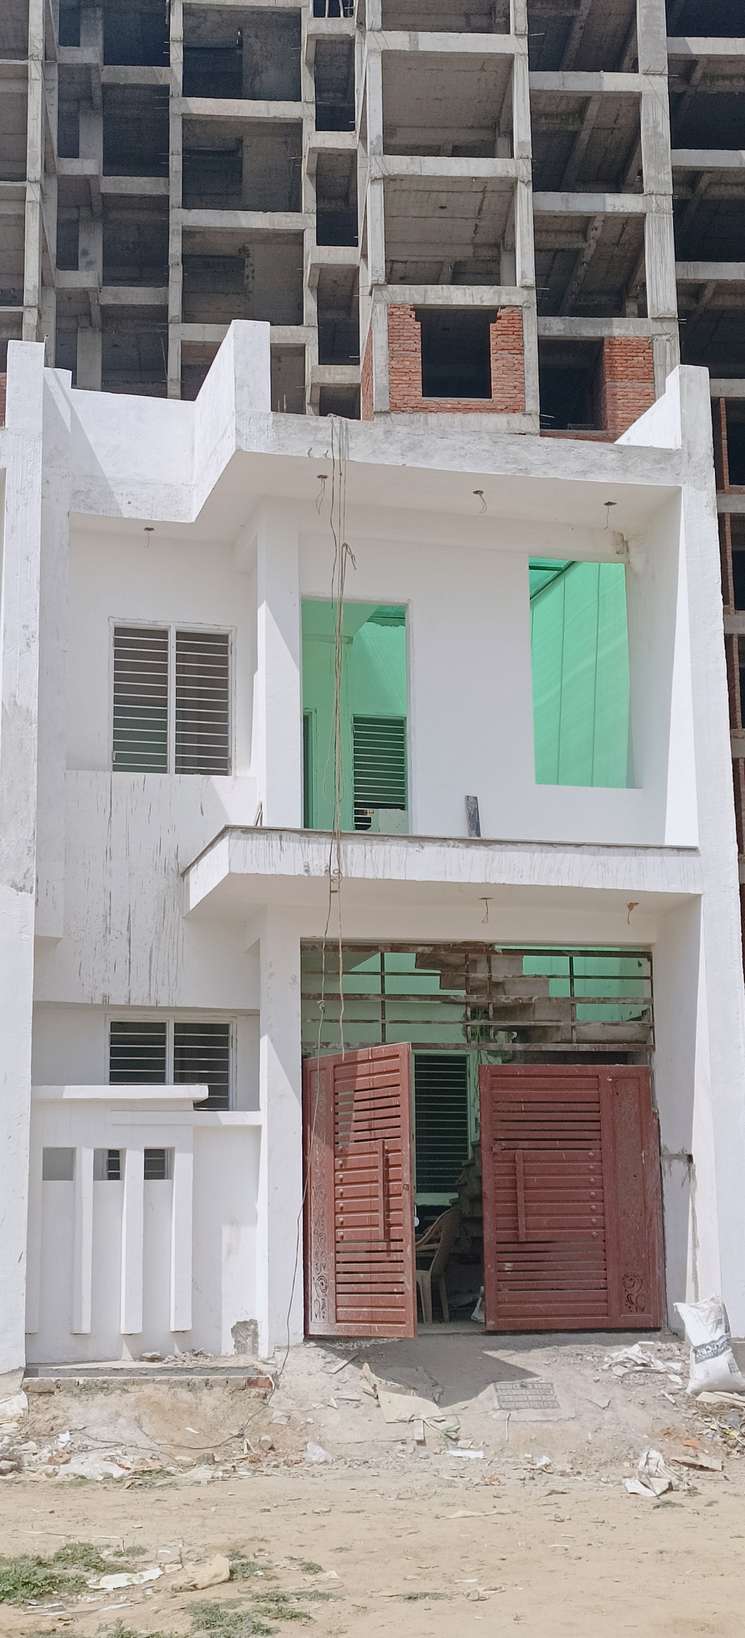 3 Bedroom 1400 Sq.Ft. Villa in Gomti Nagar Lucknow